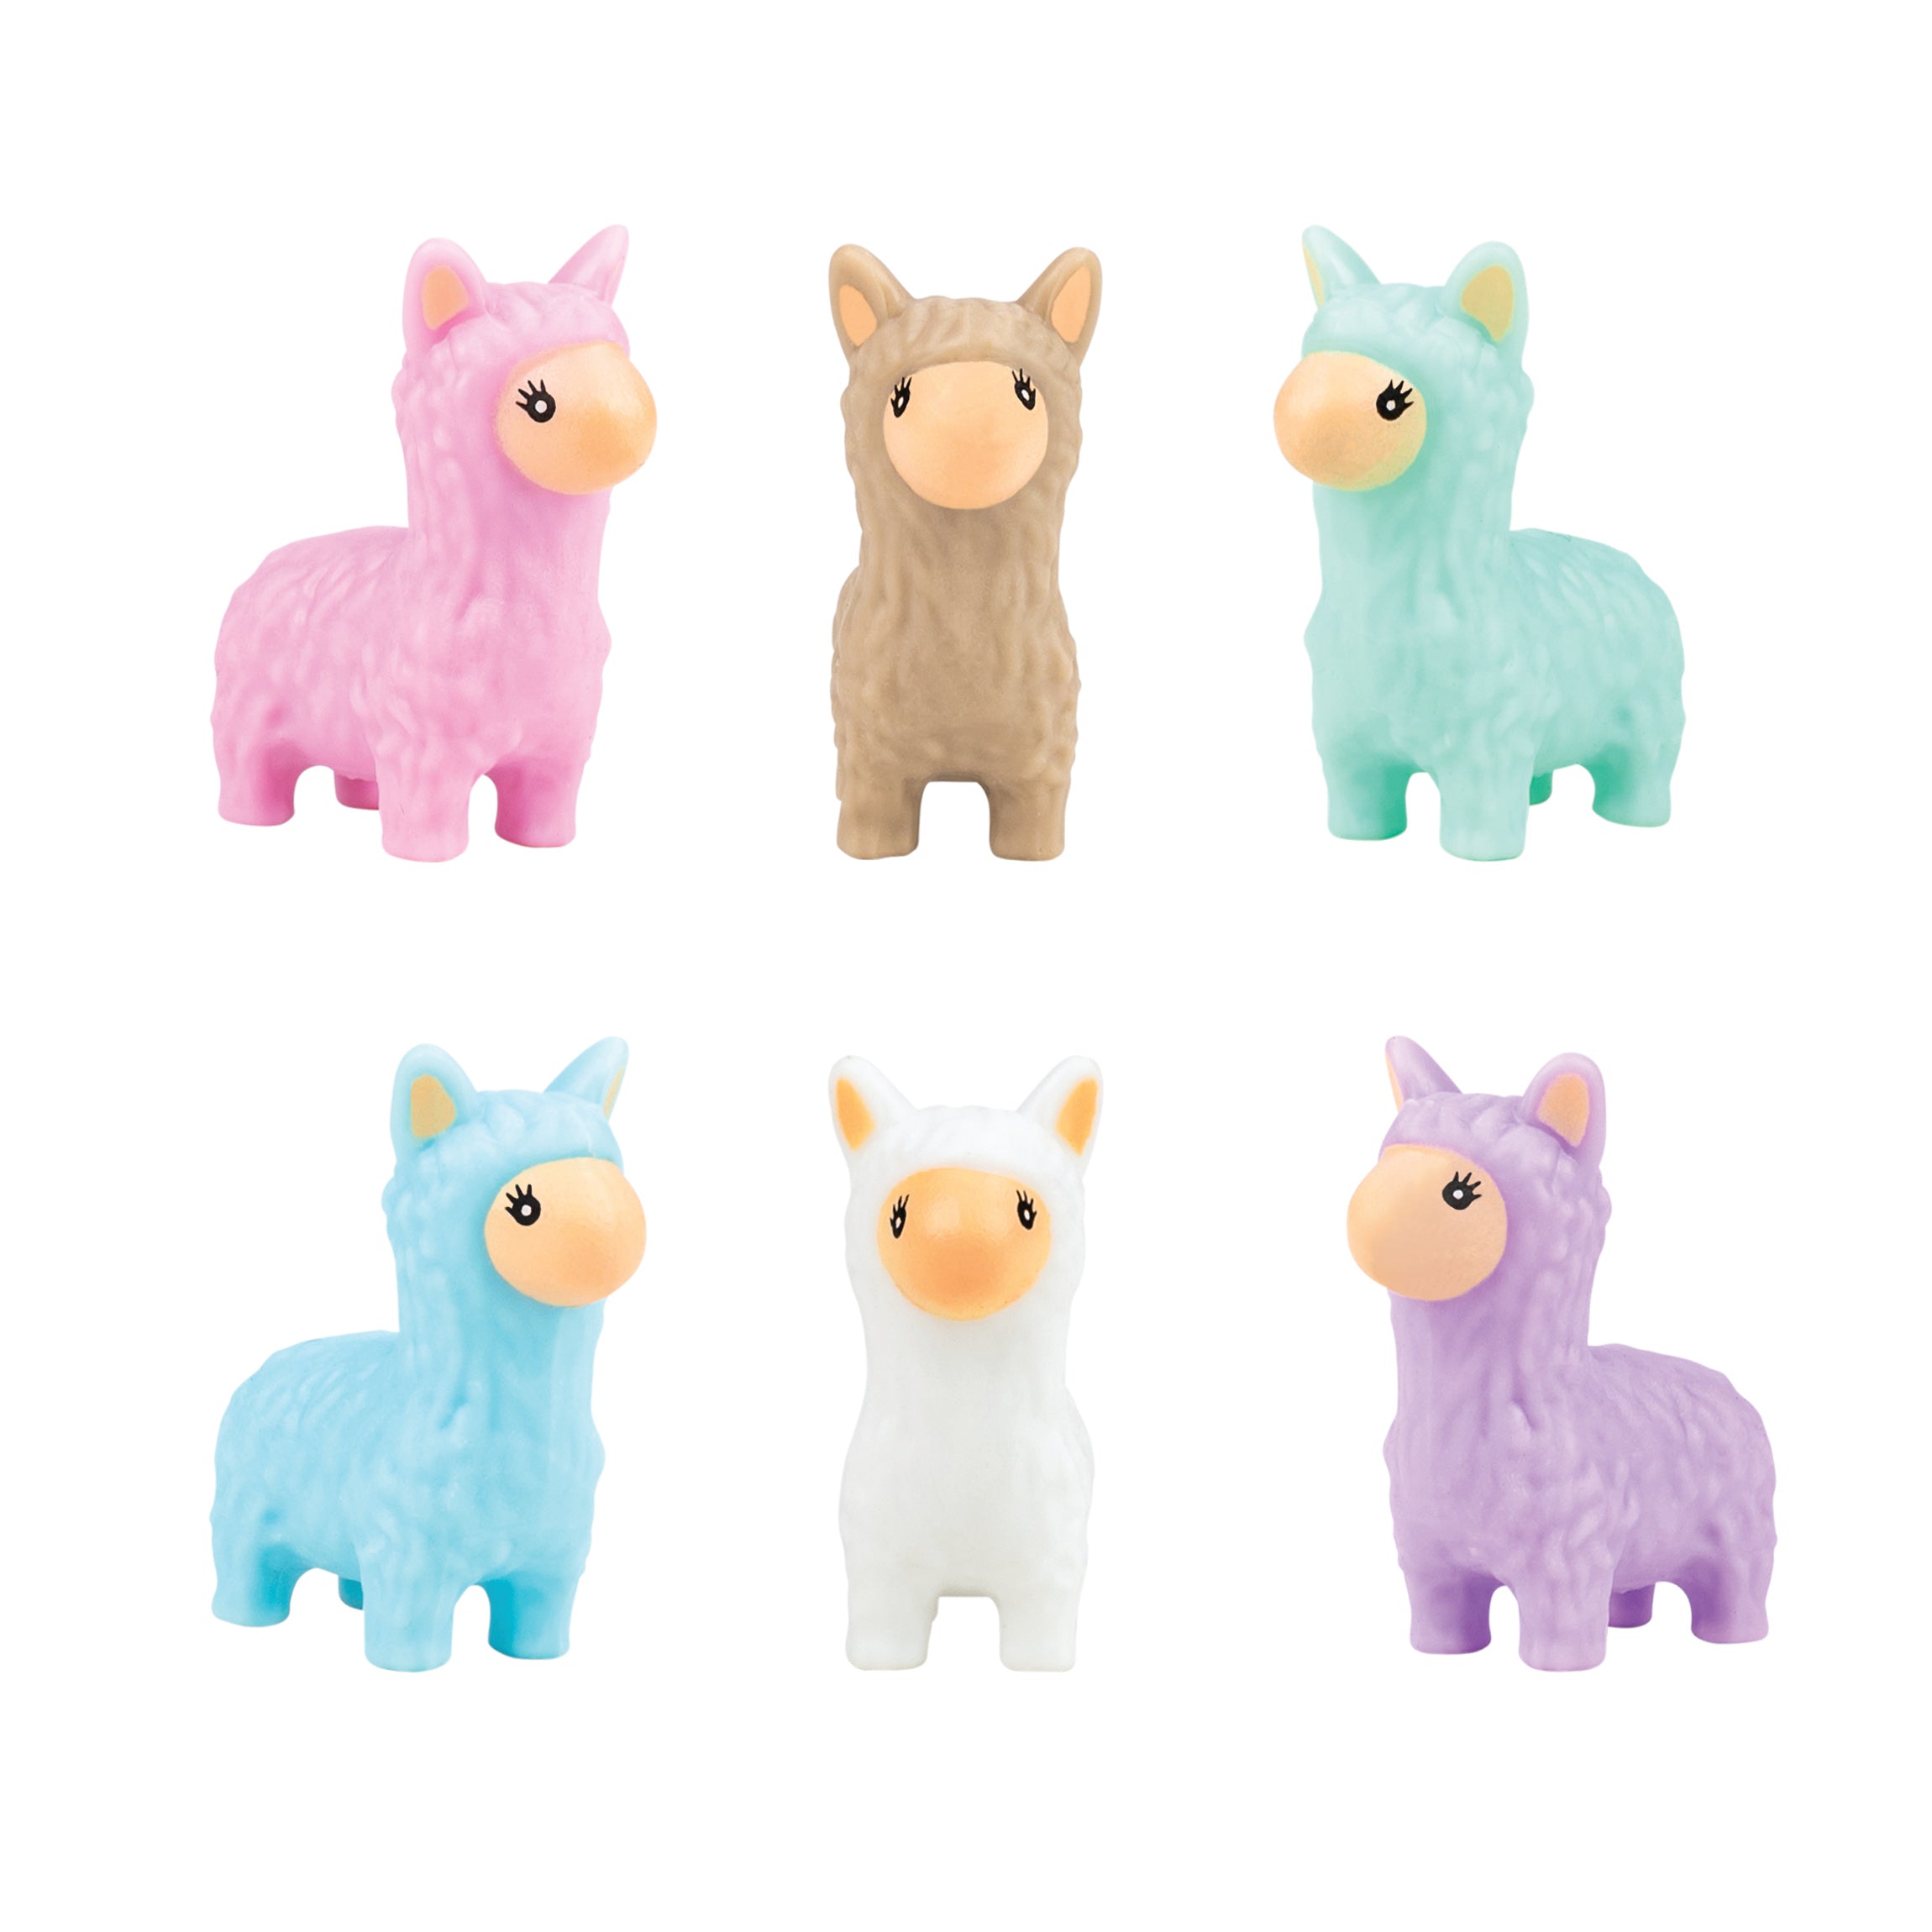 Alpaca Toy Figures